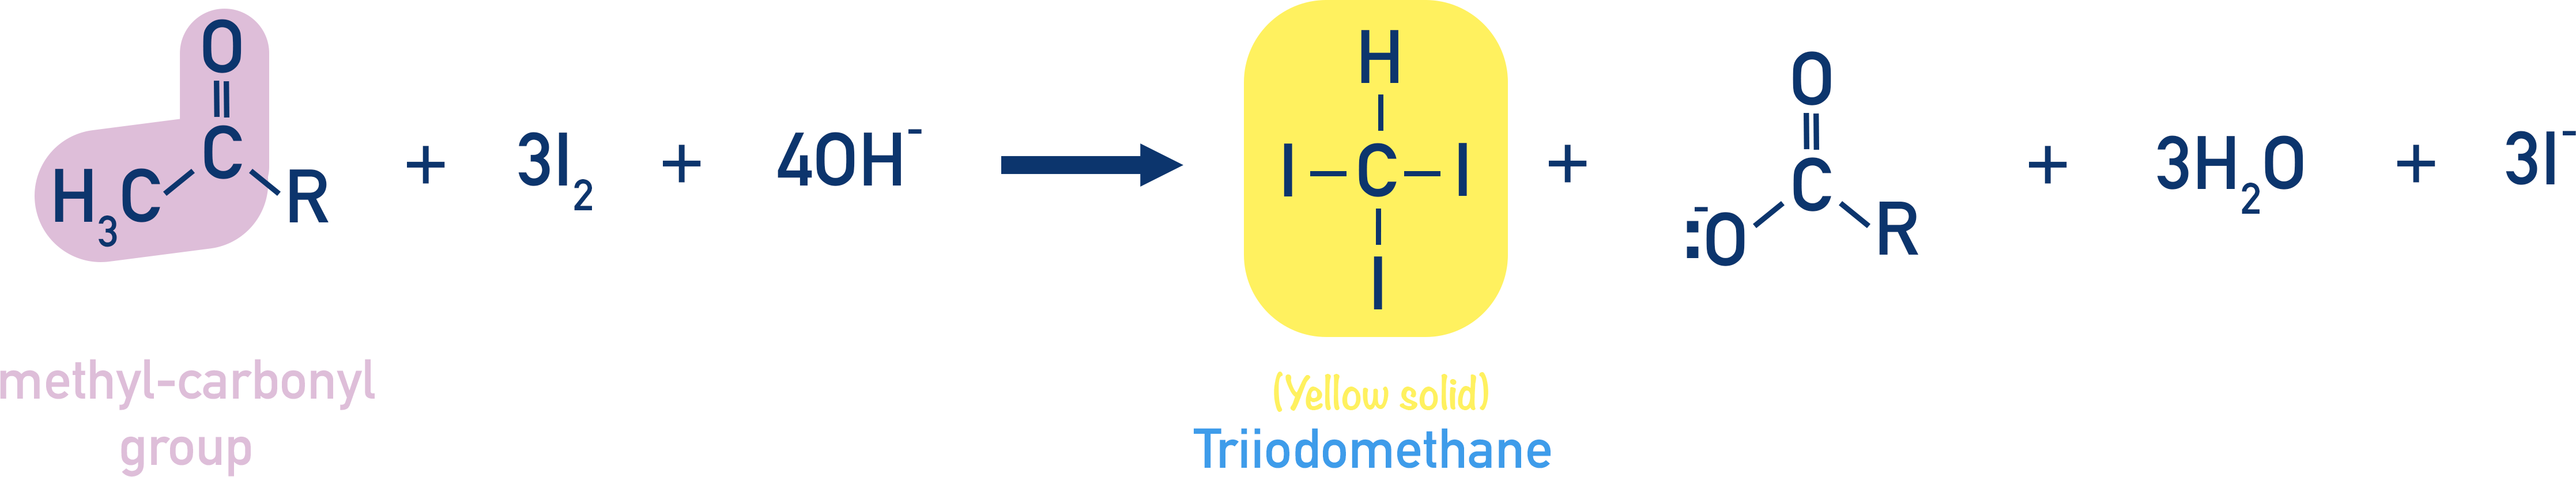 methyl carbonyl test tri iodomethane test yellow crystals